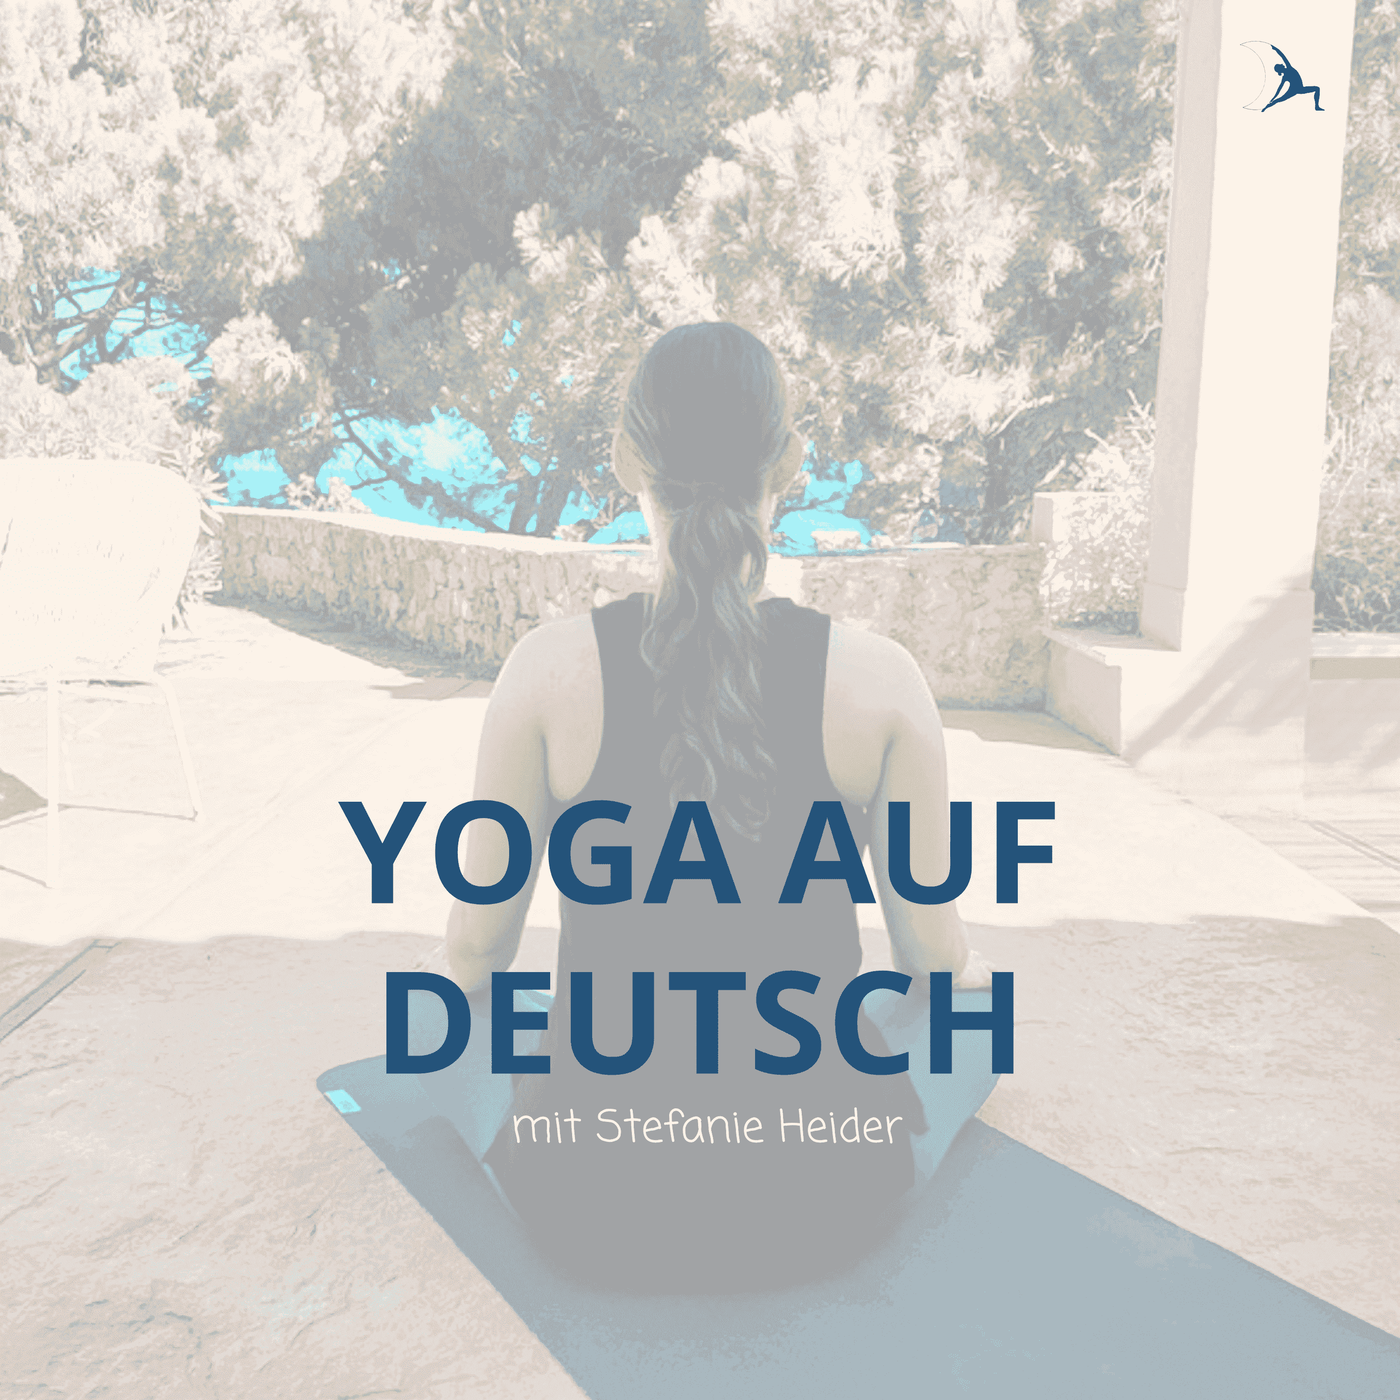 Yoga auf Deutsch